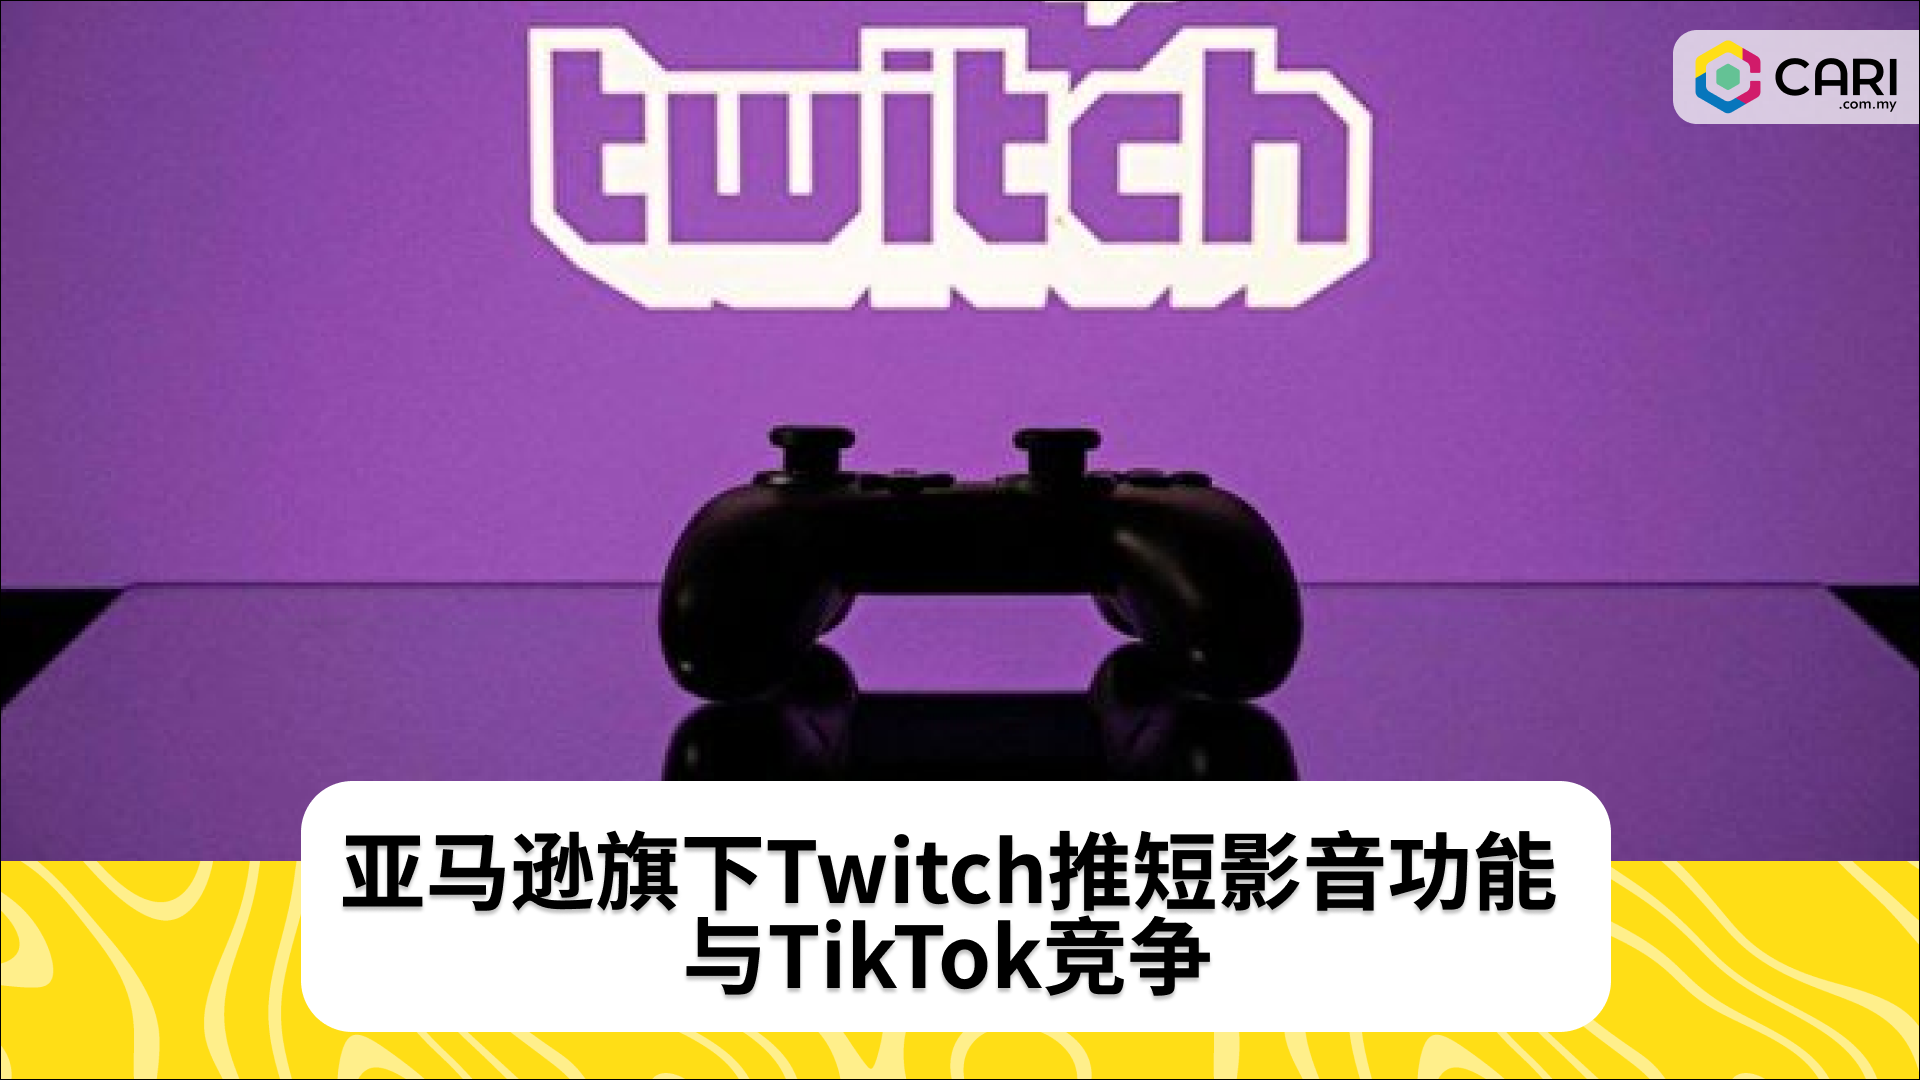 亚马逊旗下Twitch推短影音功能 与TikTok竞争